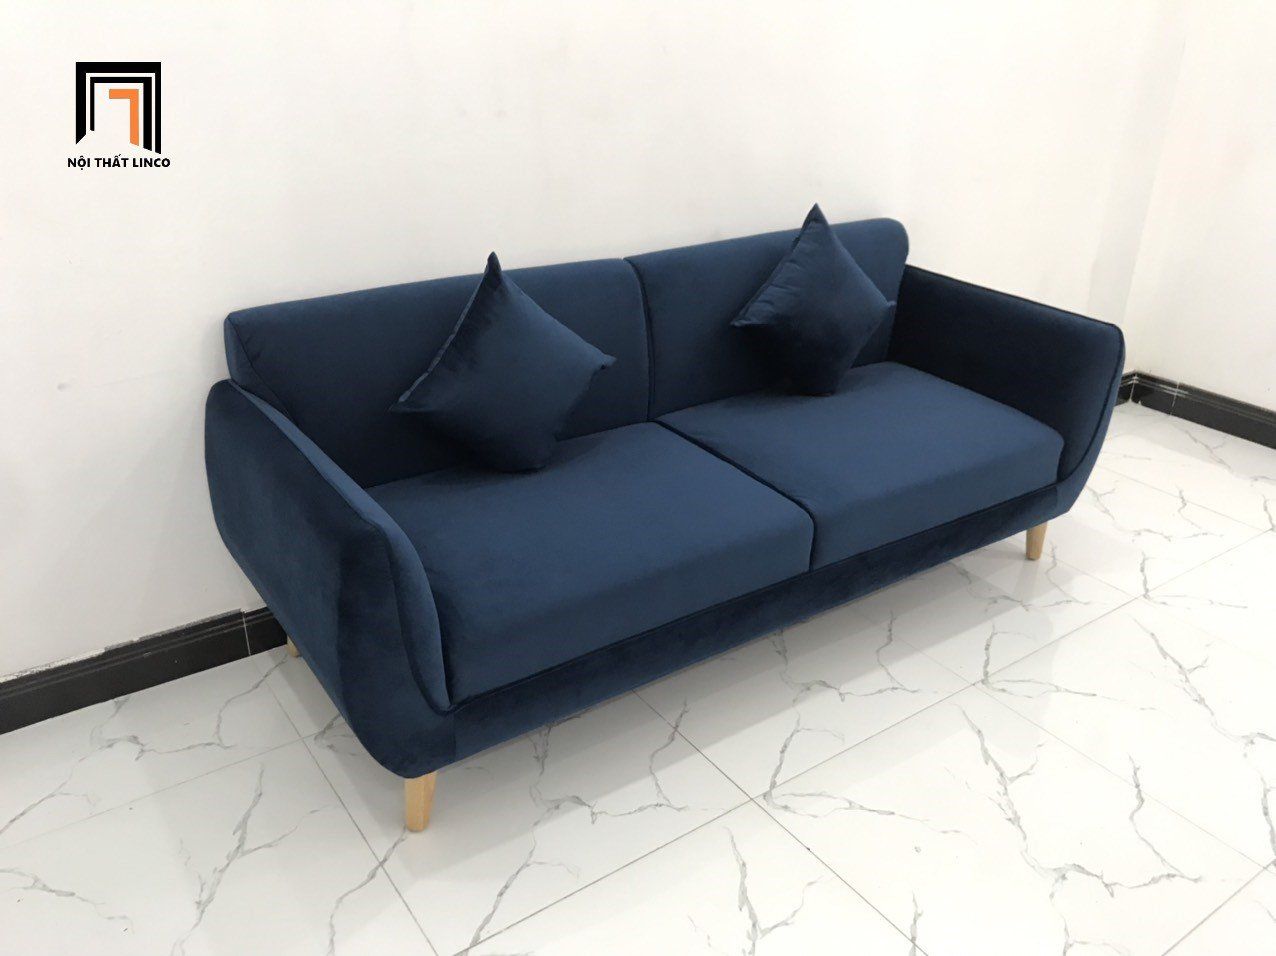  Bộ bàn ghế sofa băng văng dài 1m9 xanh dương đậm giá rẻ 